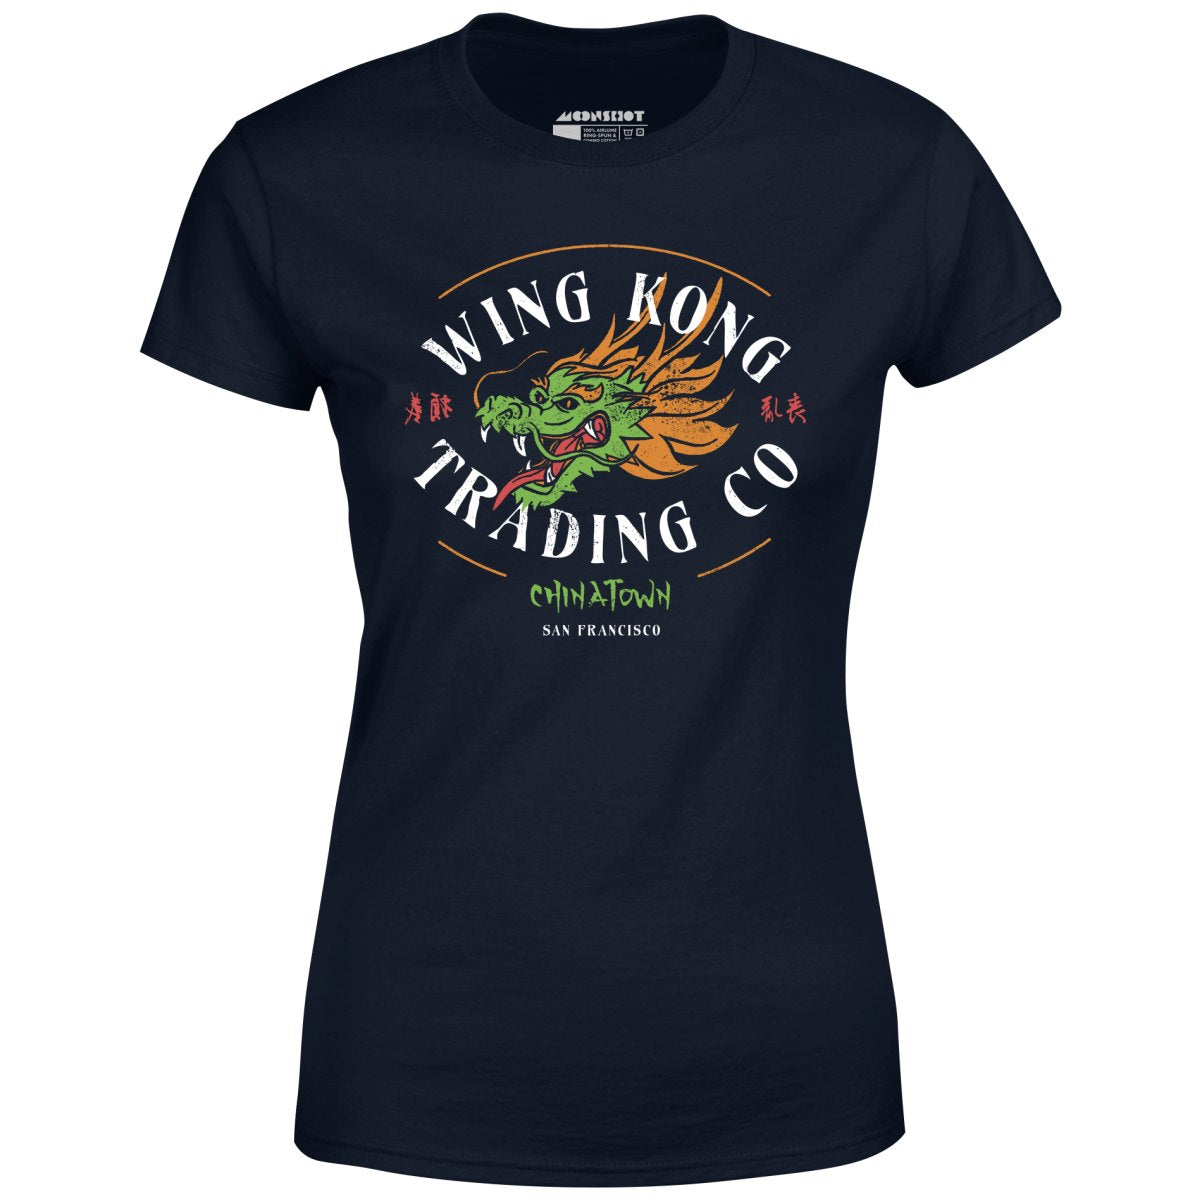 Wing Kong Trading Co. - Women's T-Shirt